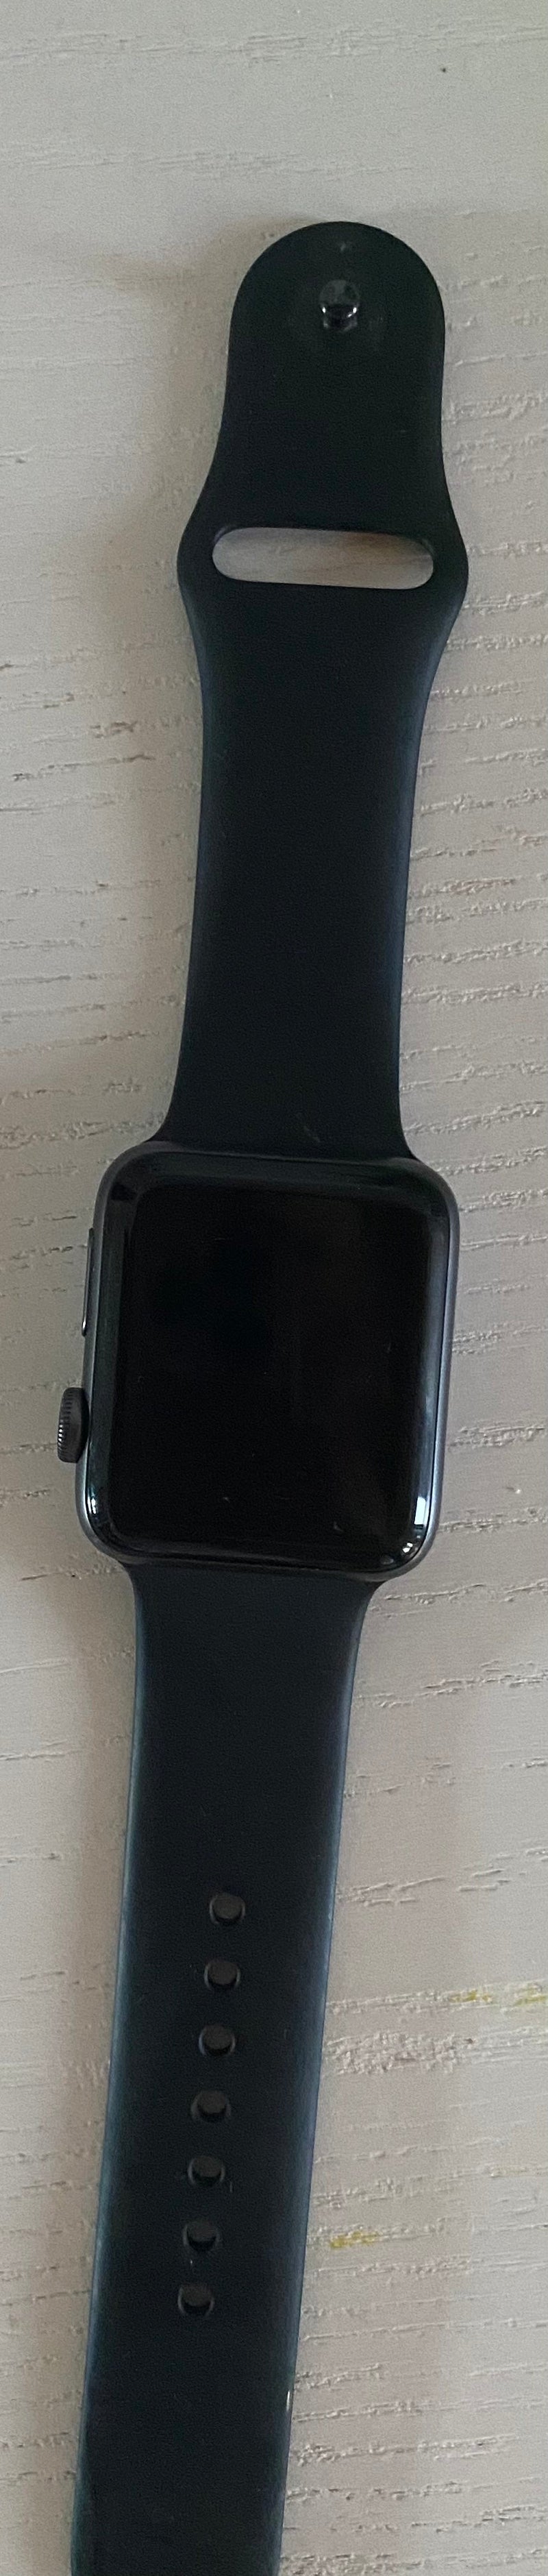 Apple Watch 3 Alluminio Grigio Siderale